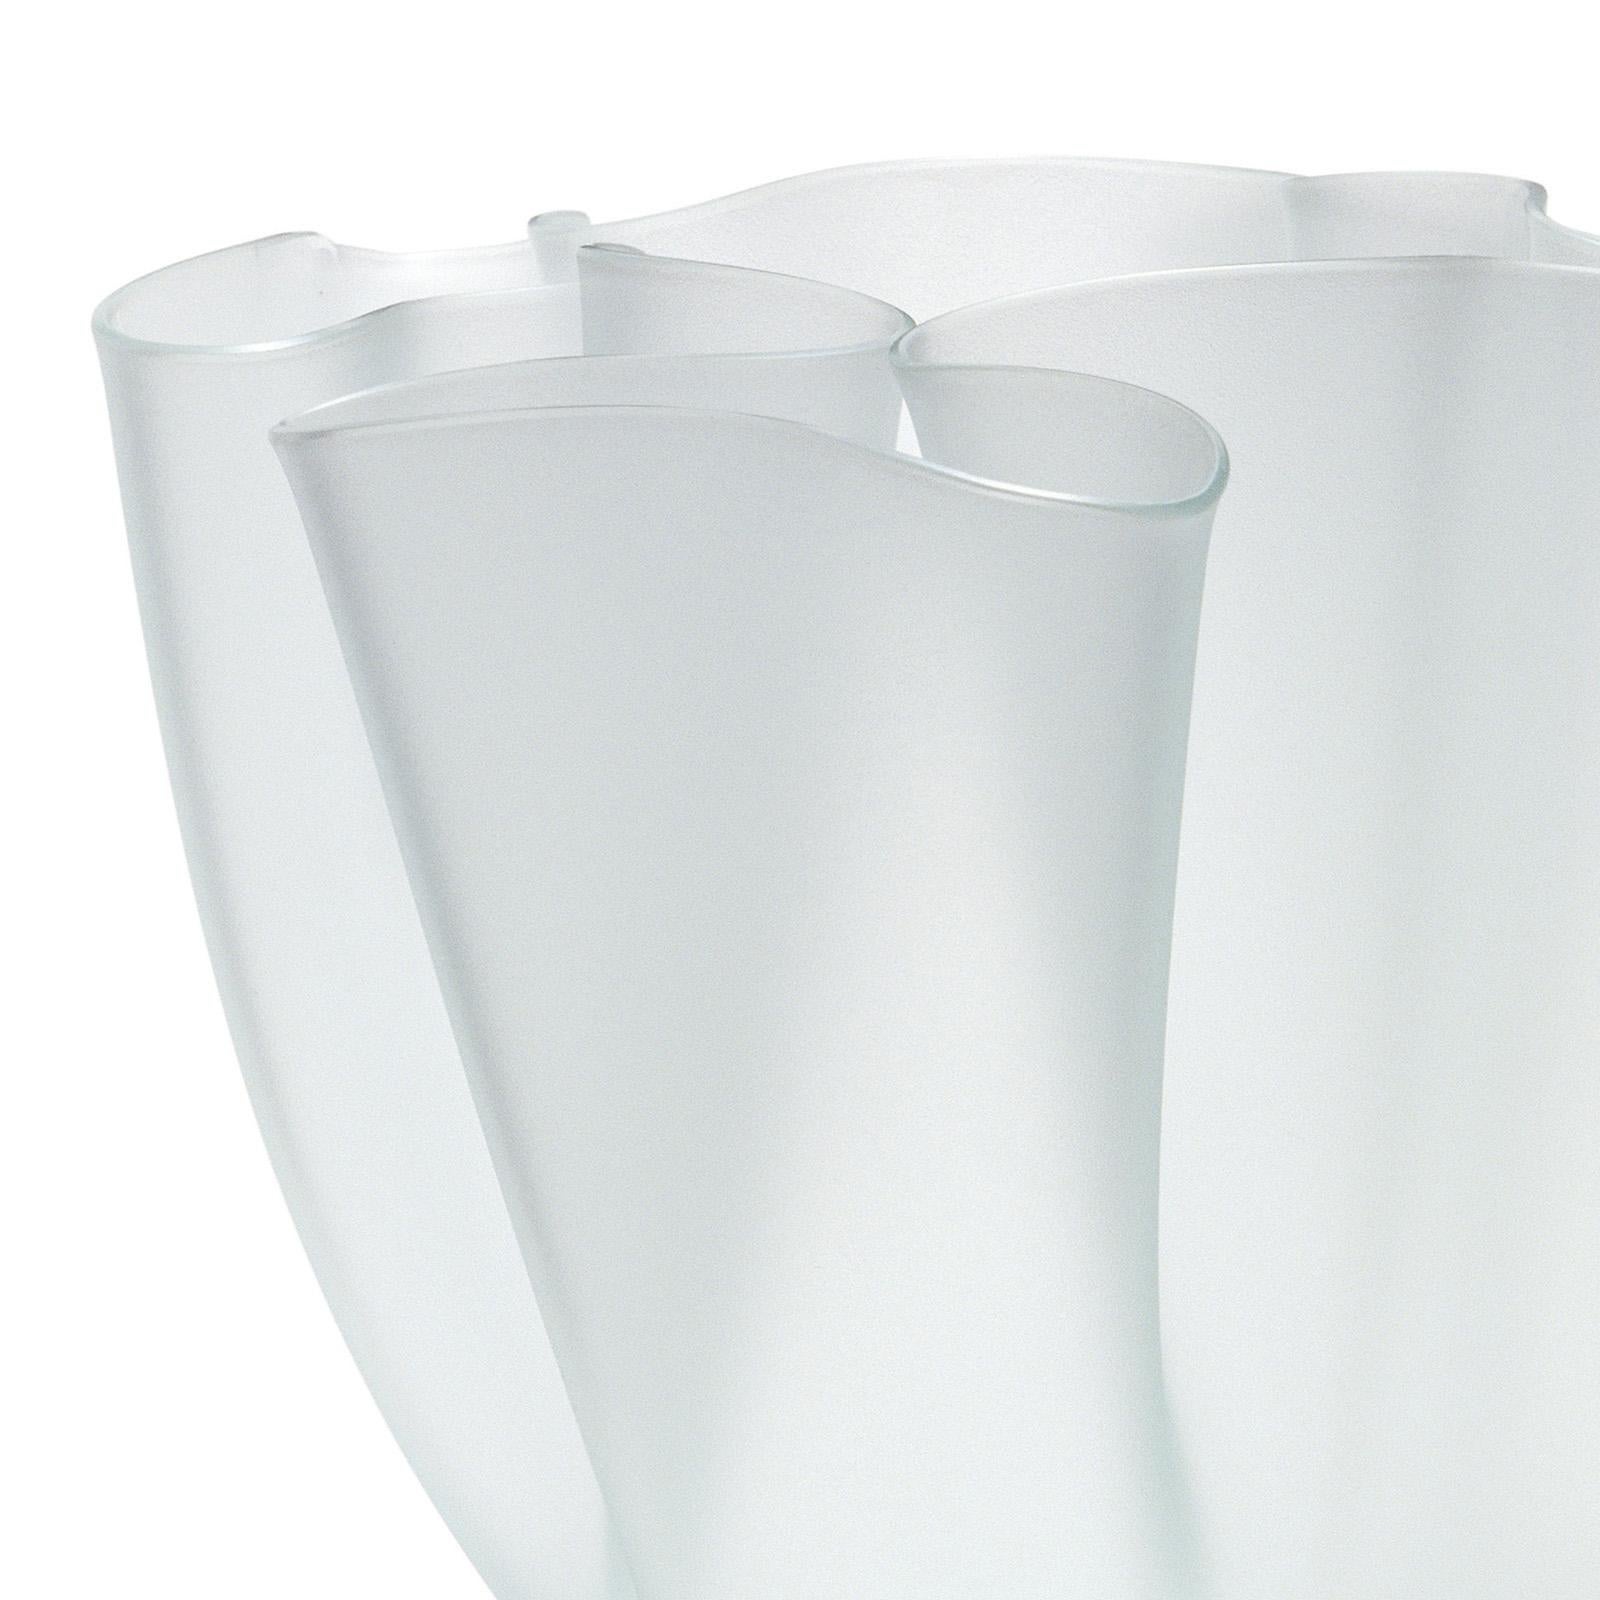 Vase blühend weiß in verschmolzenem Opal
weißes Glas, 5 mm dick.
Auch in blauer Ausführung erhältlich.